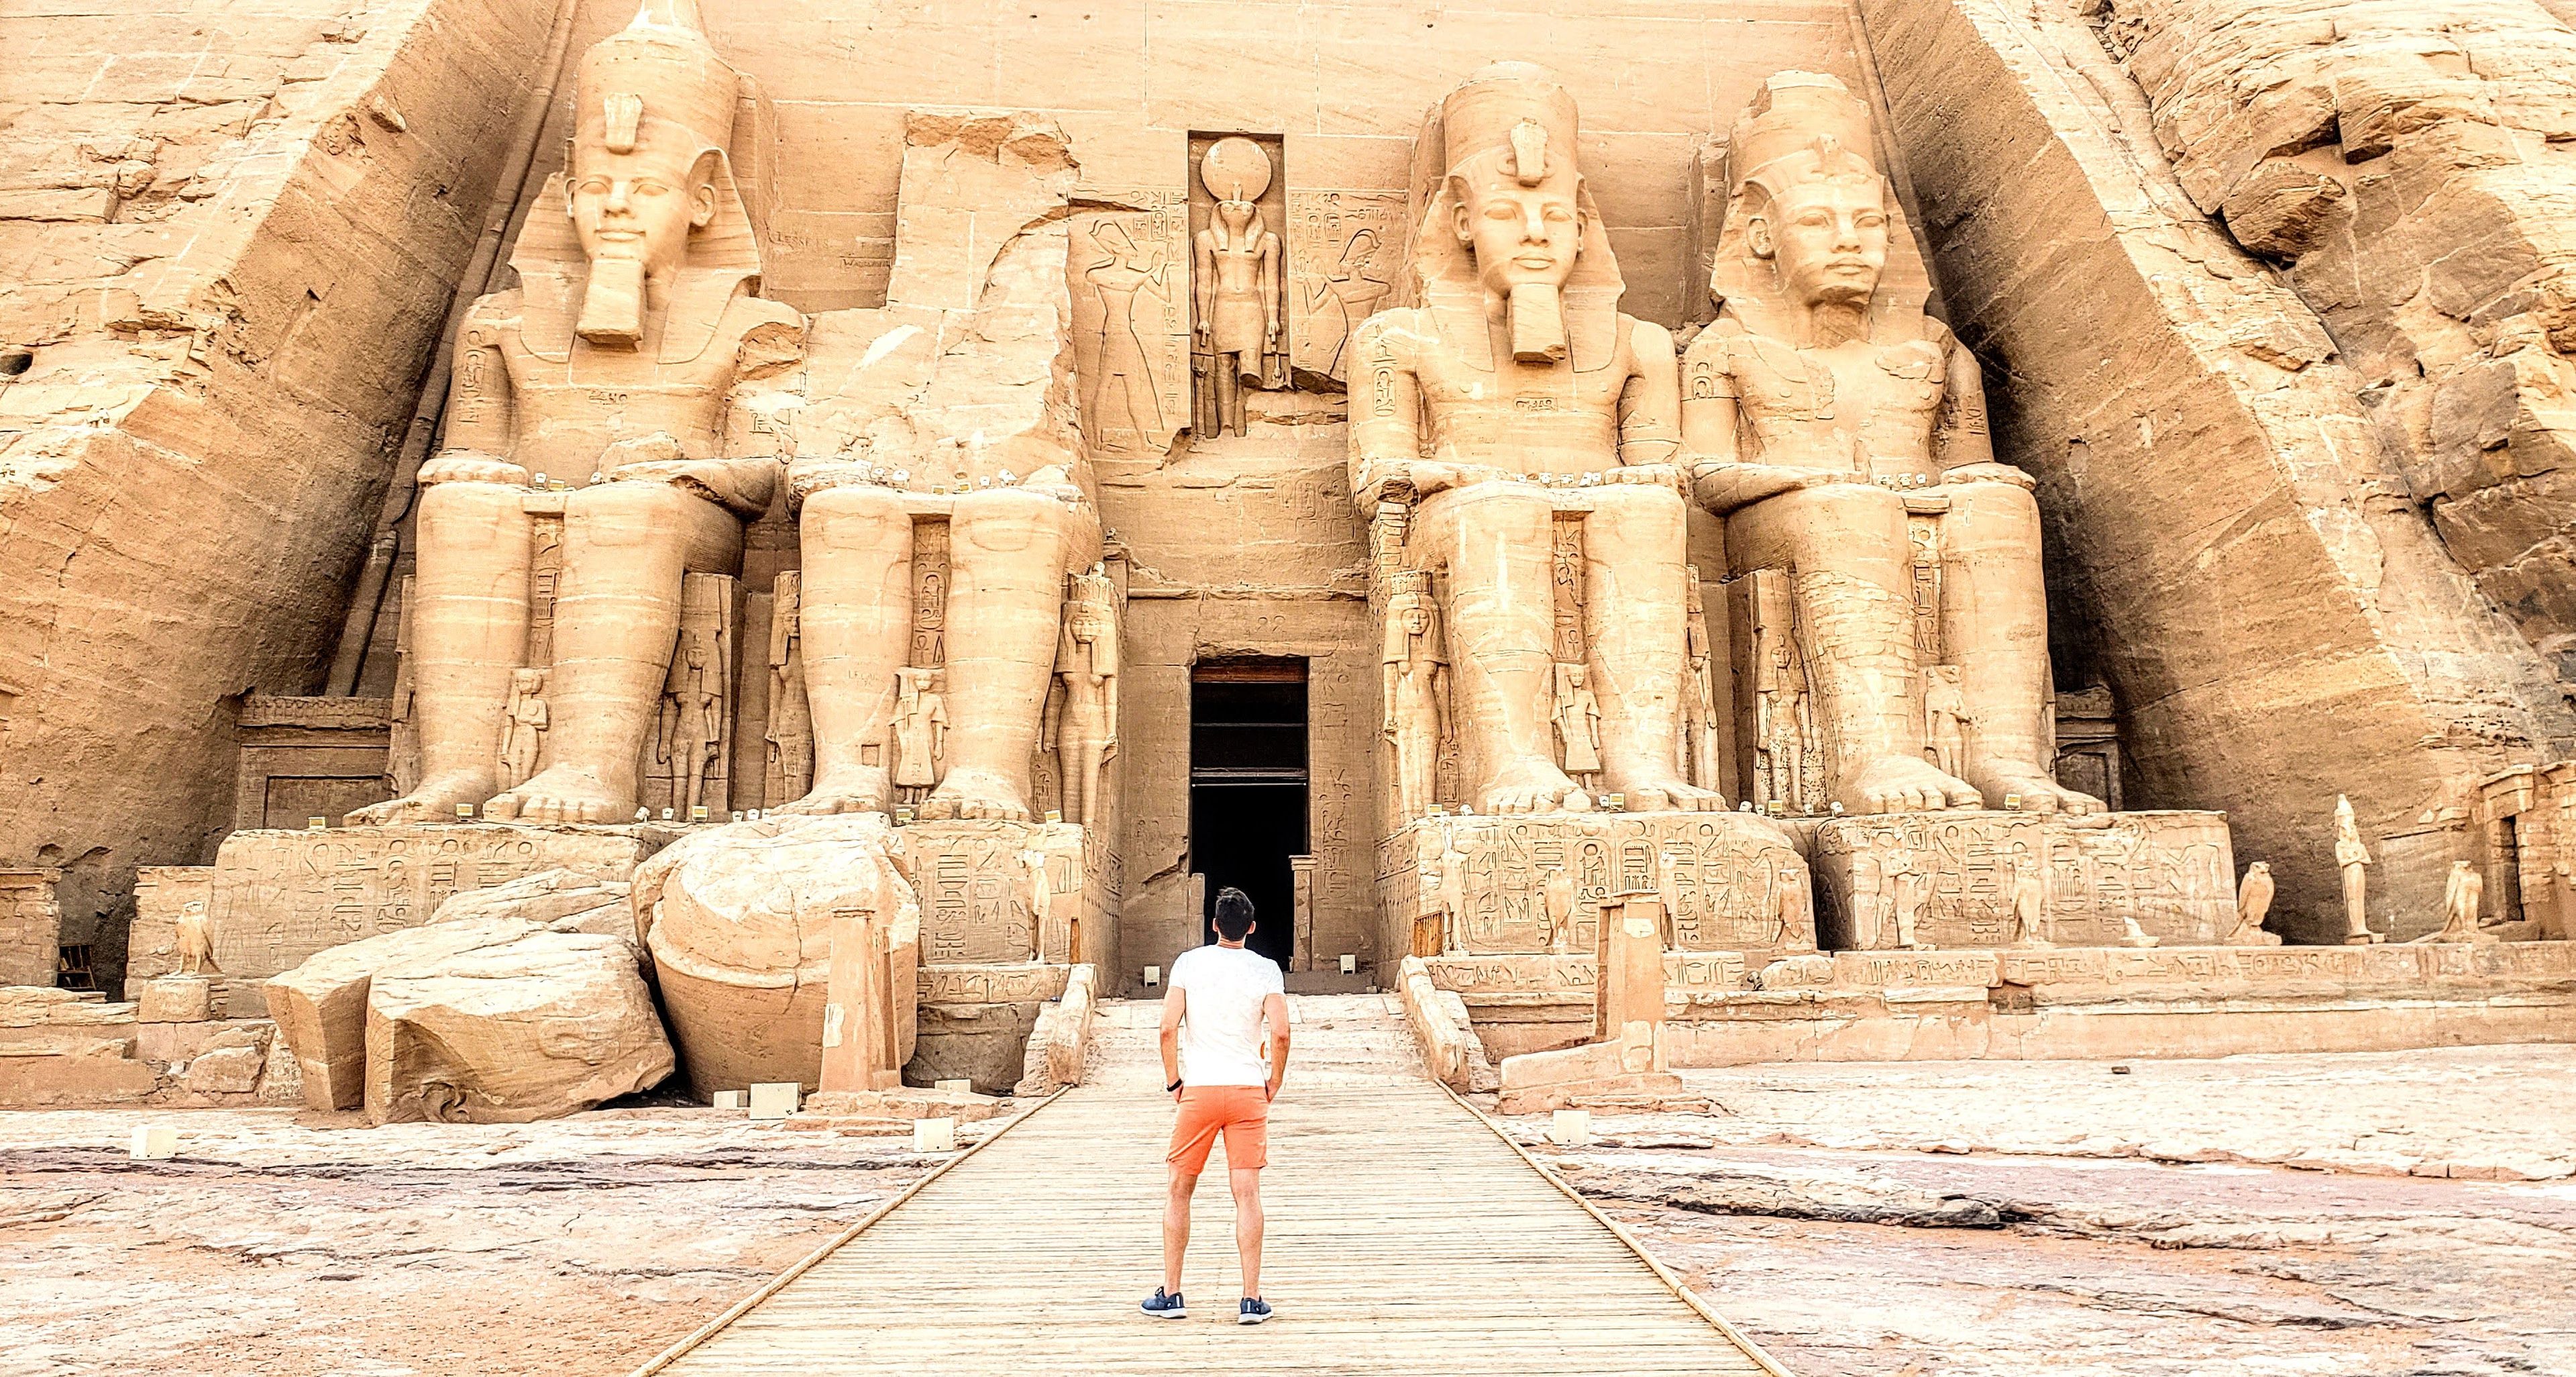 El espectacular templo de Abu Simbel, construido por Ramses II, sin un solo turista salvo el autor de este artículo.